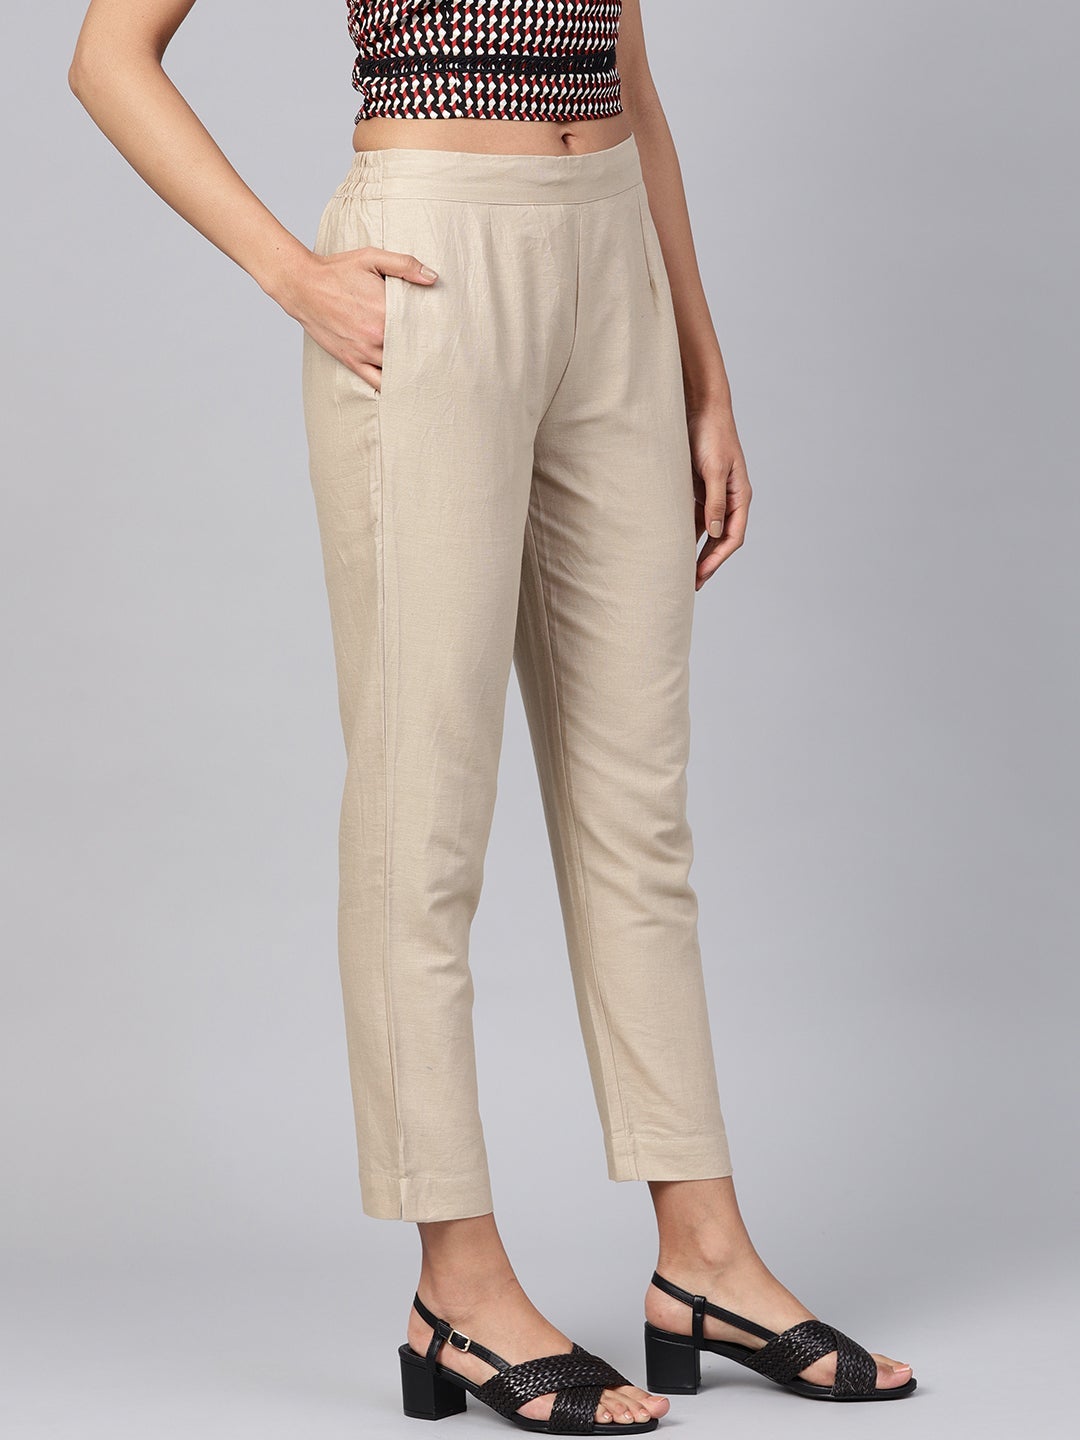 Sandgrey Cotton Flex Solid Slim Fit Pant/Slim Pant